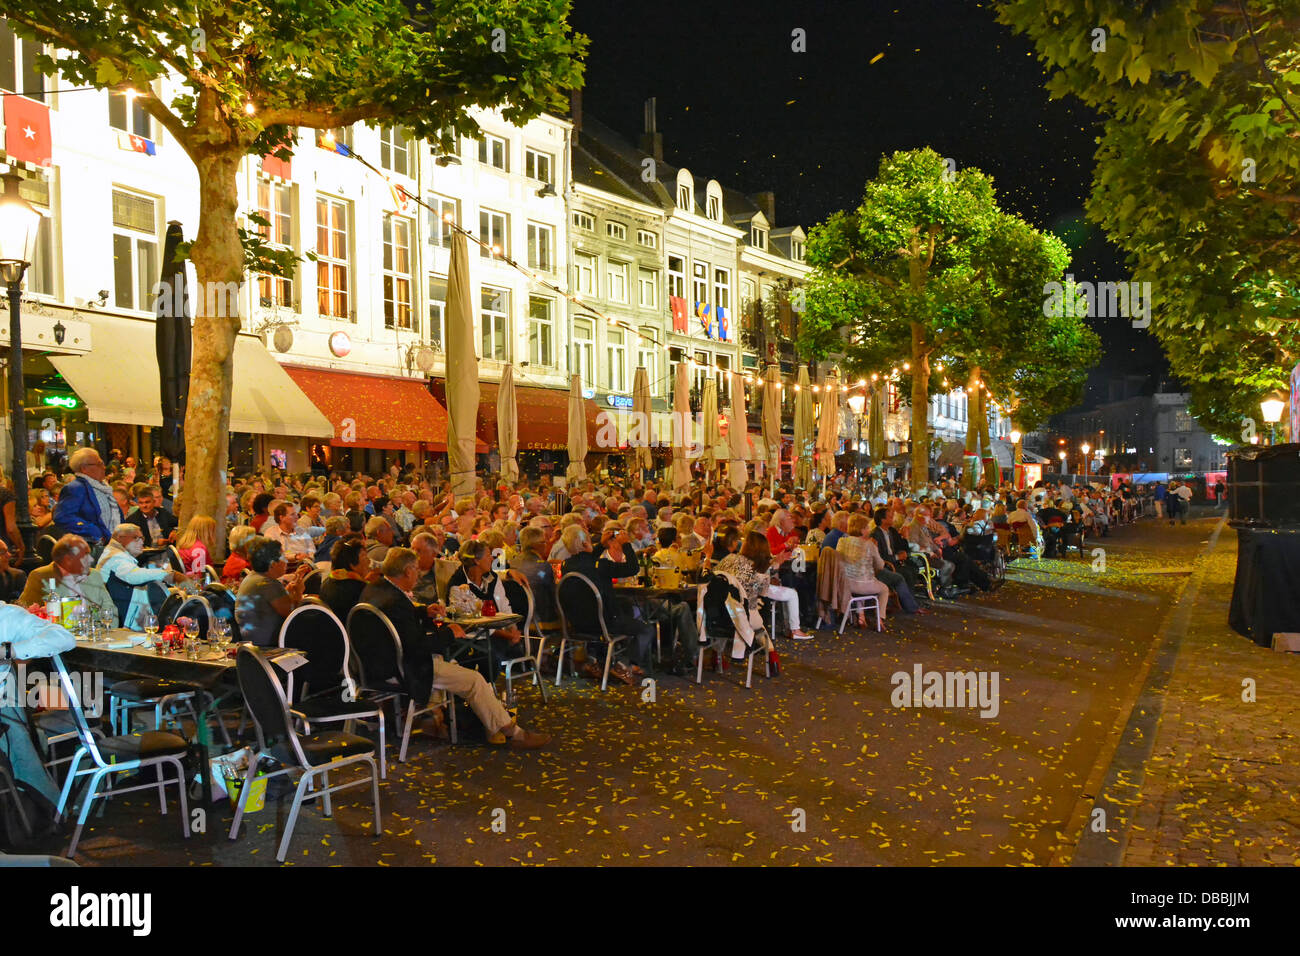 Il pubblico della città di Maastricht, i ristoranti bar seduti nella scena di piazza Vrijthof, guarda l'orchestra di André Rieu che esegue il concerto di musica serale estiva dell'UE Foto Stock